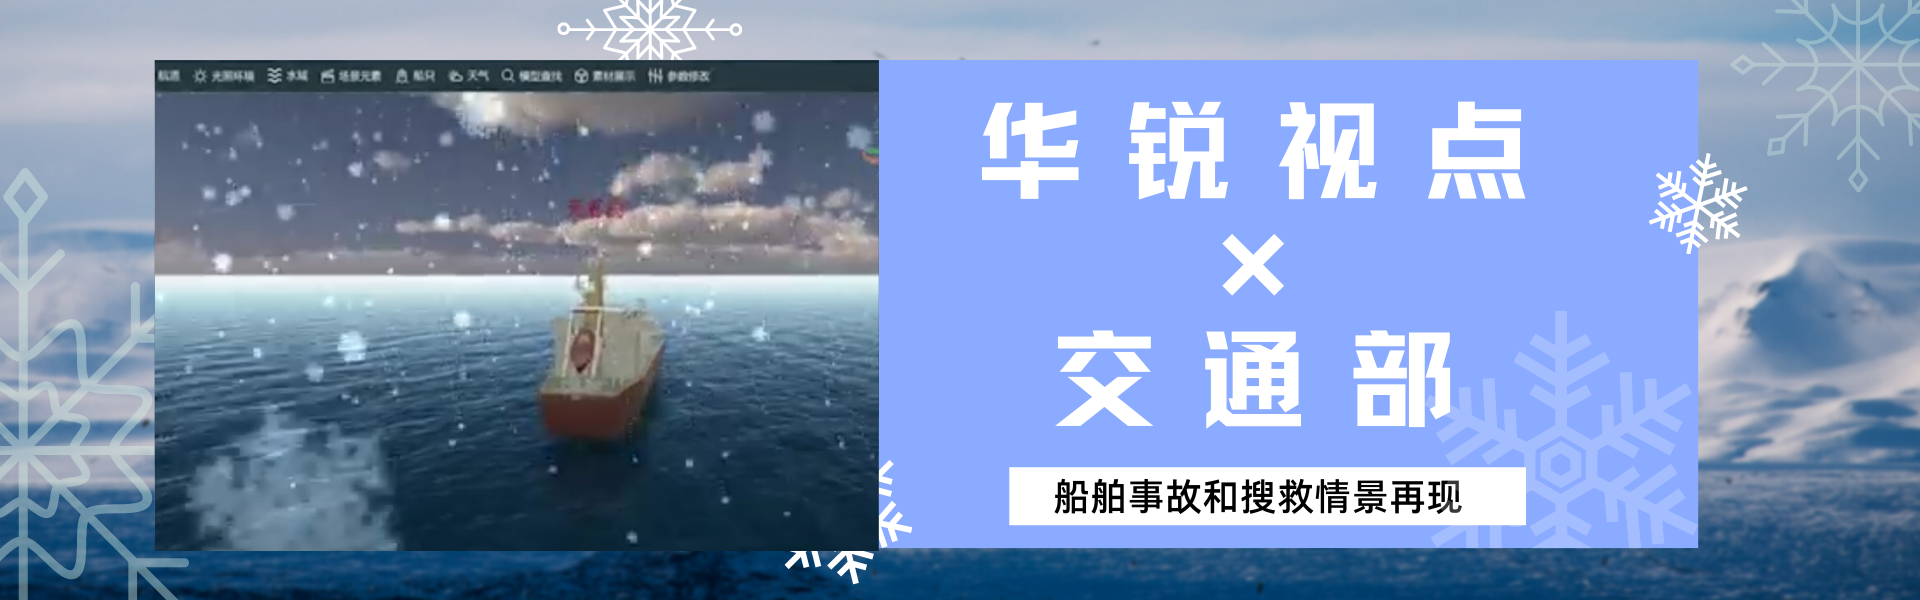 广州华锐互动精品案例之船舶事故和搜救情景在线仿真系统